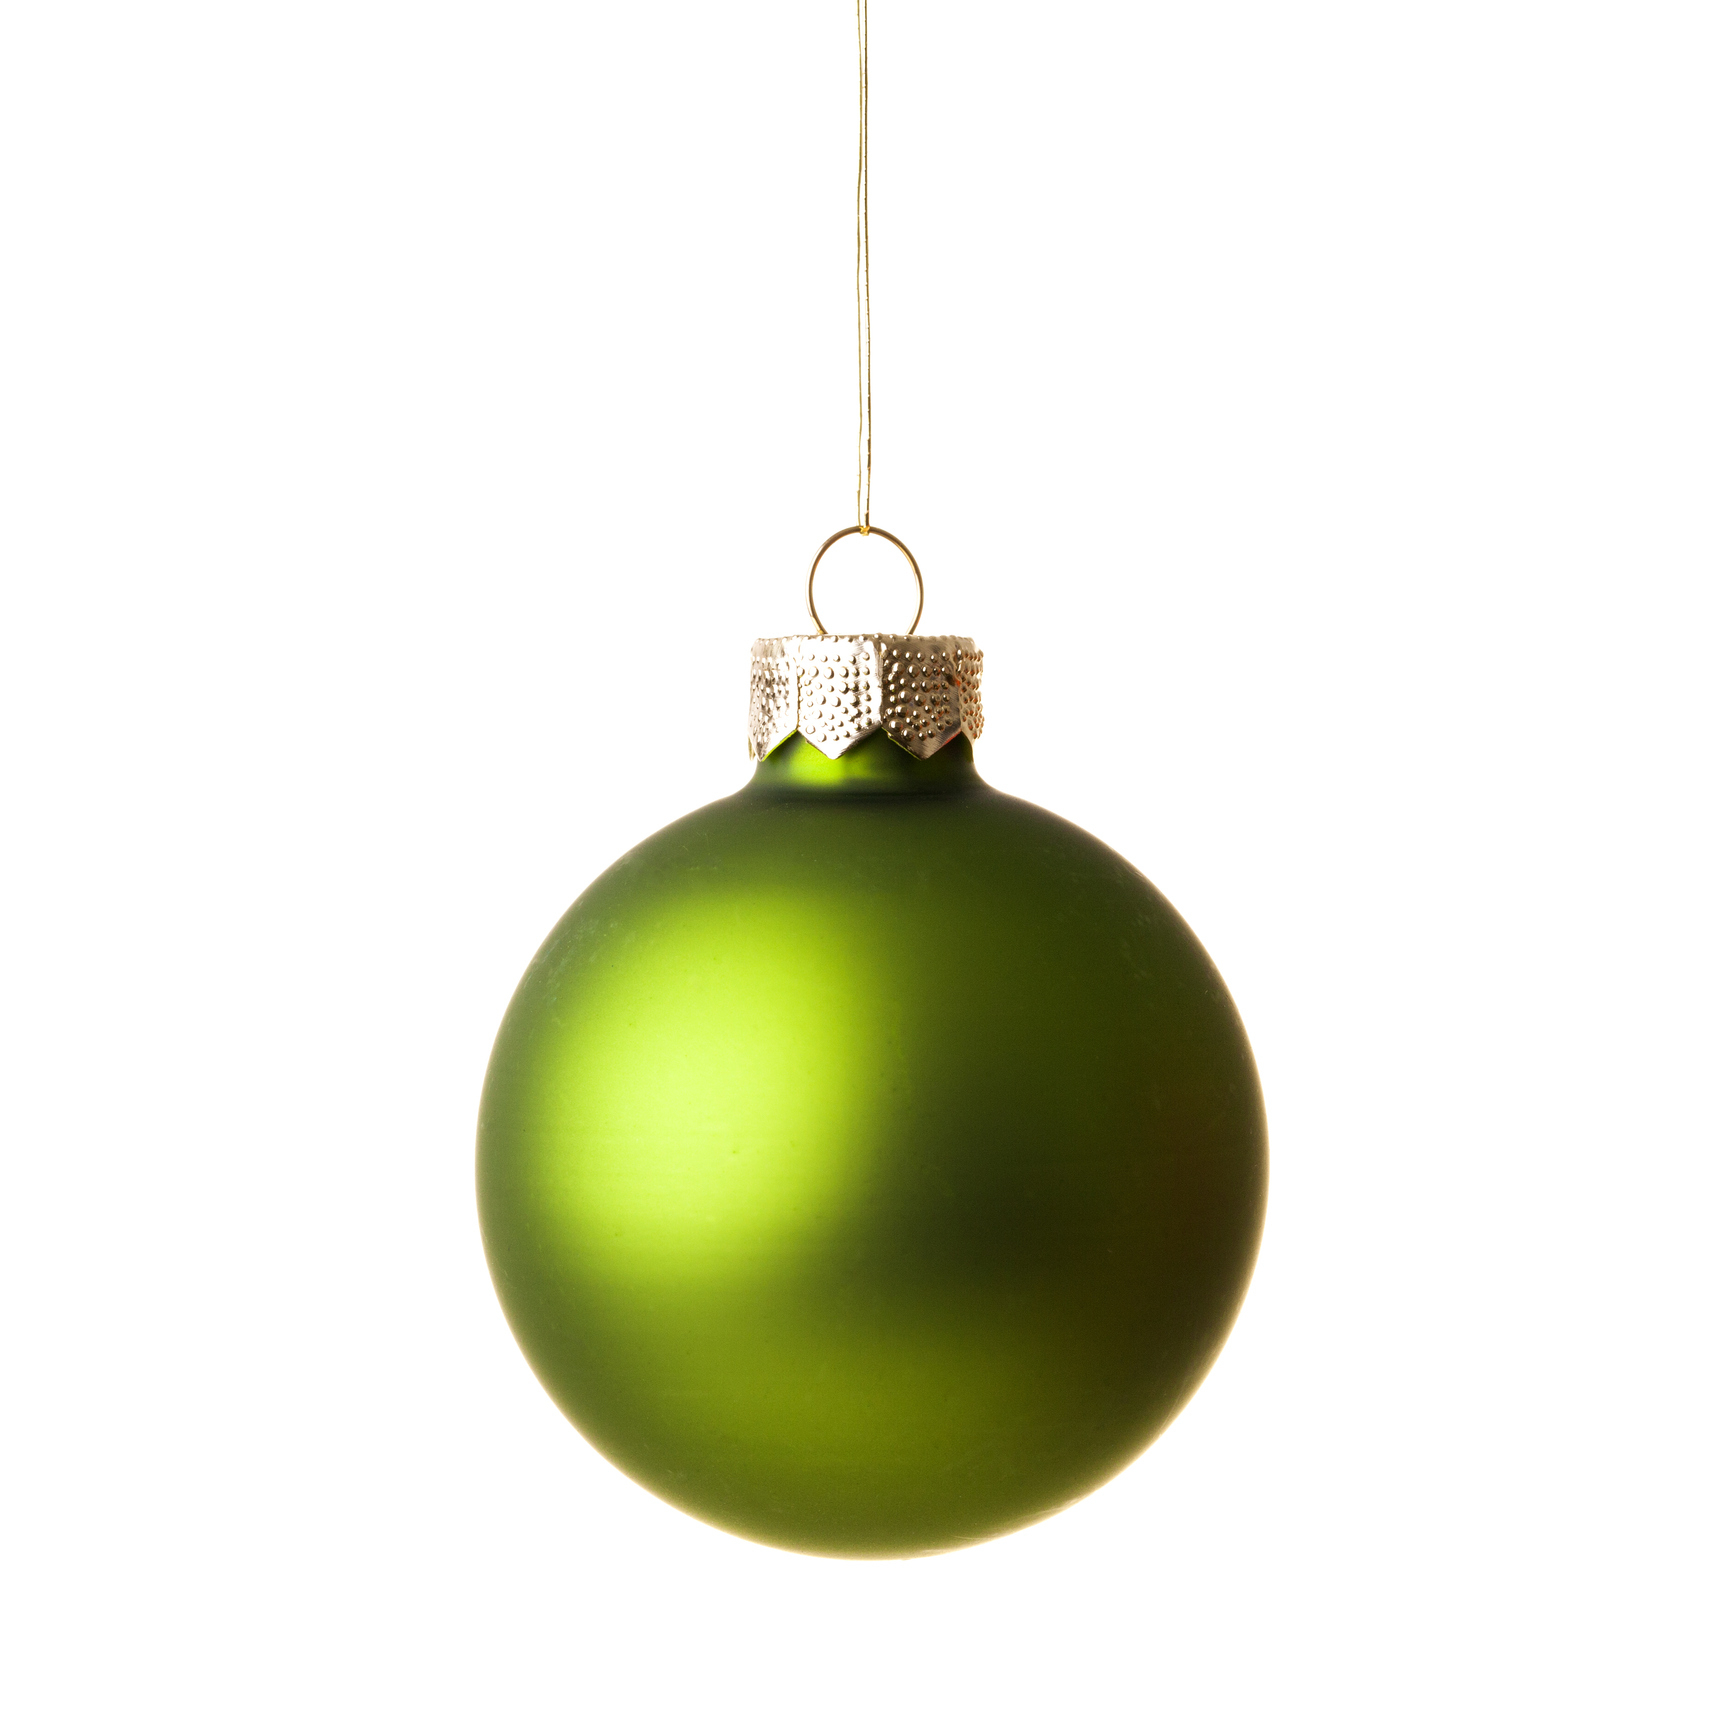 closeup of a green ornament